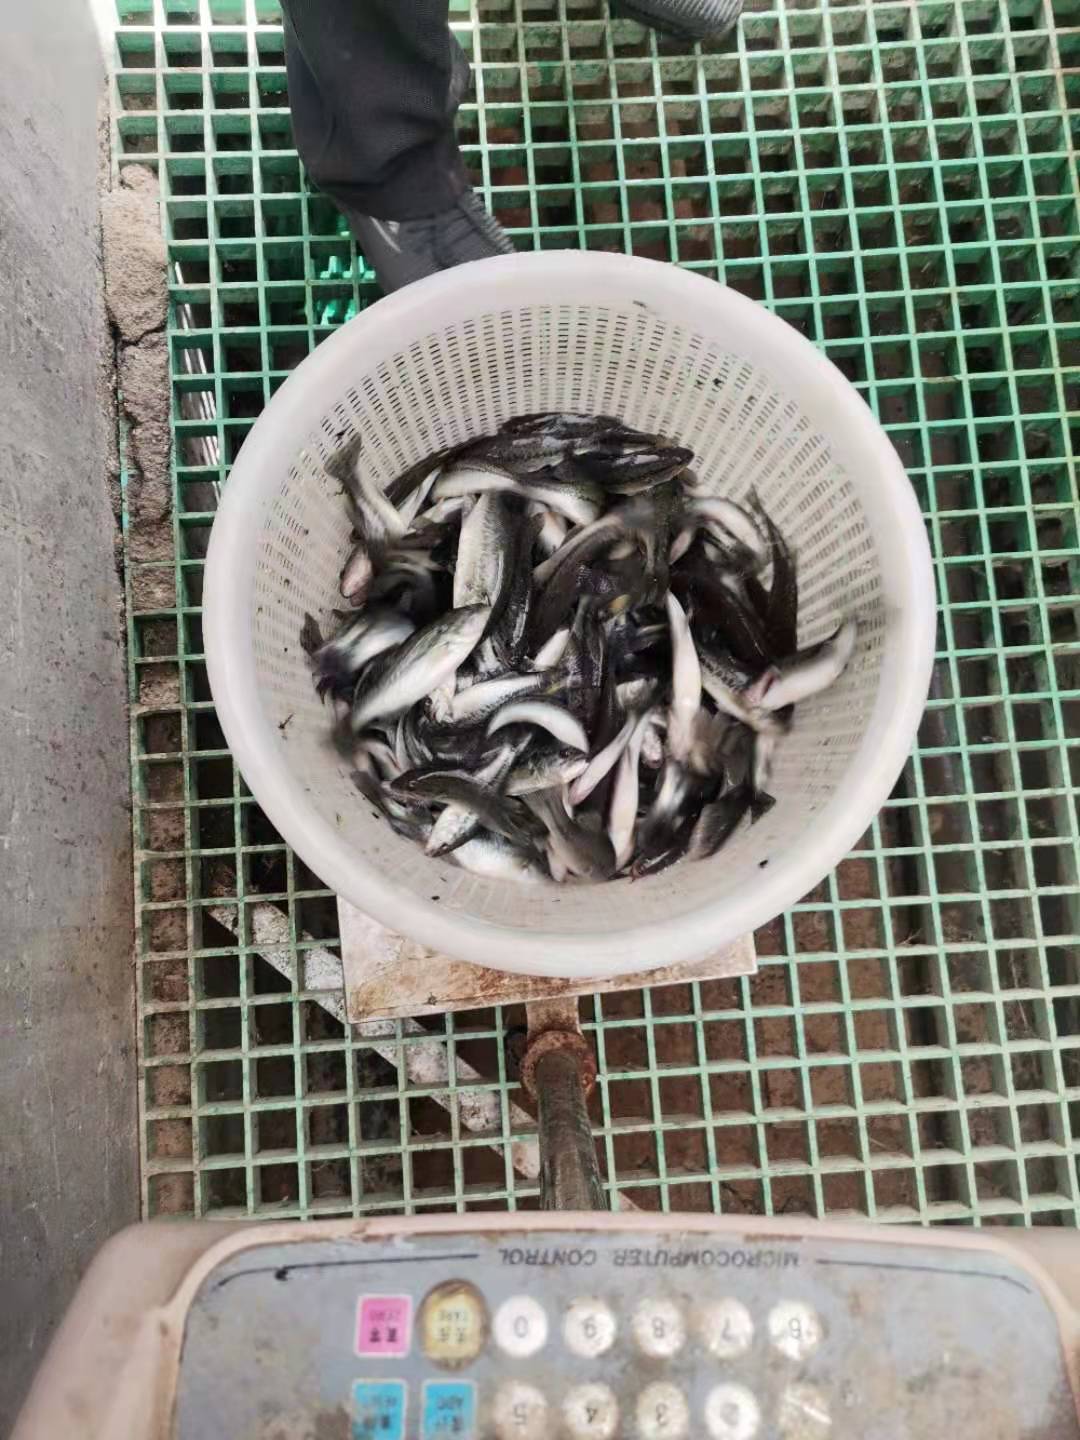 大量出售优质鲈鱼鱼苗 一斤10-50尾 鲜活鱼类 质优价廉6